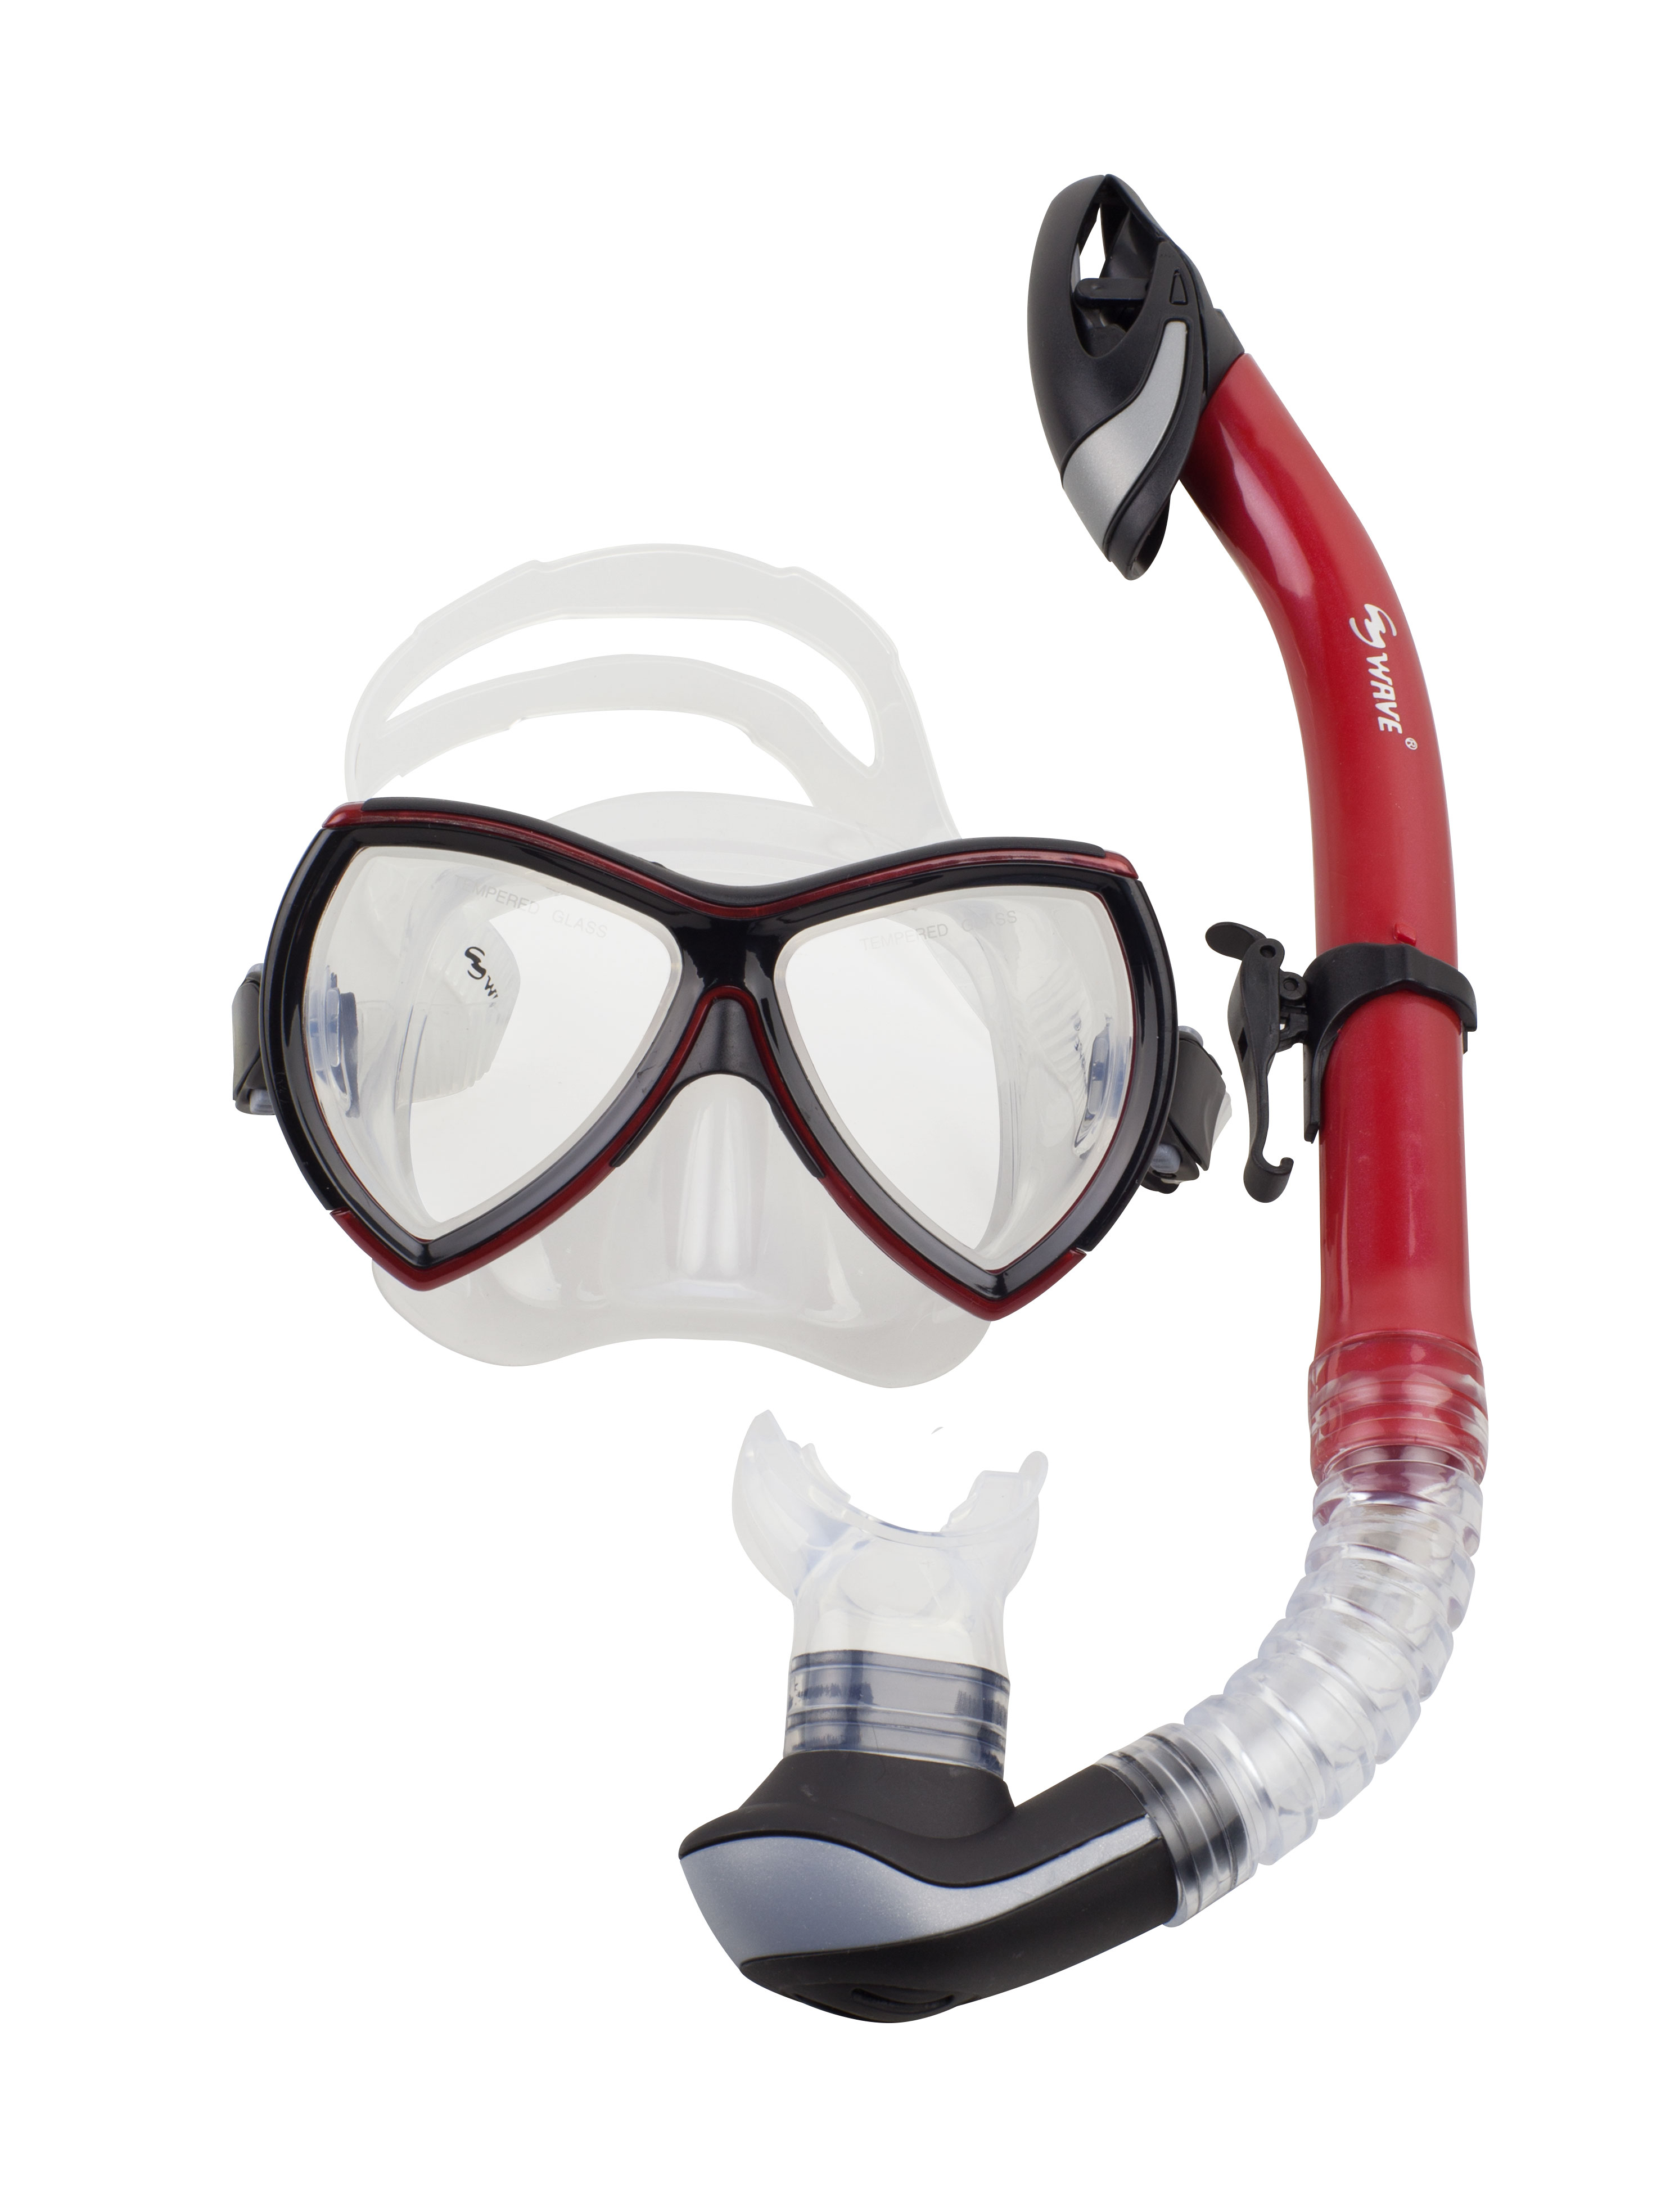 Pro for wave маска. Маска для плавания Wave m-1314. Маска для плавания Wave m-1328. Волновая маска. Как крепить трубку к маске для подводного плавания.